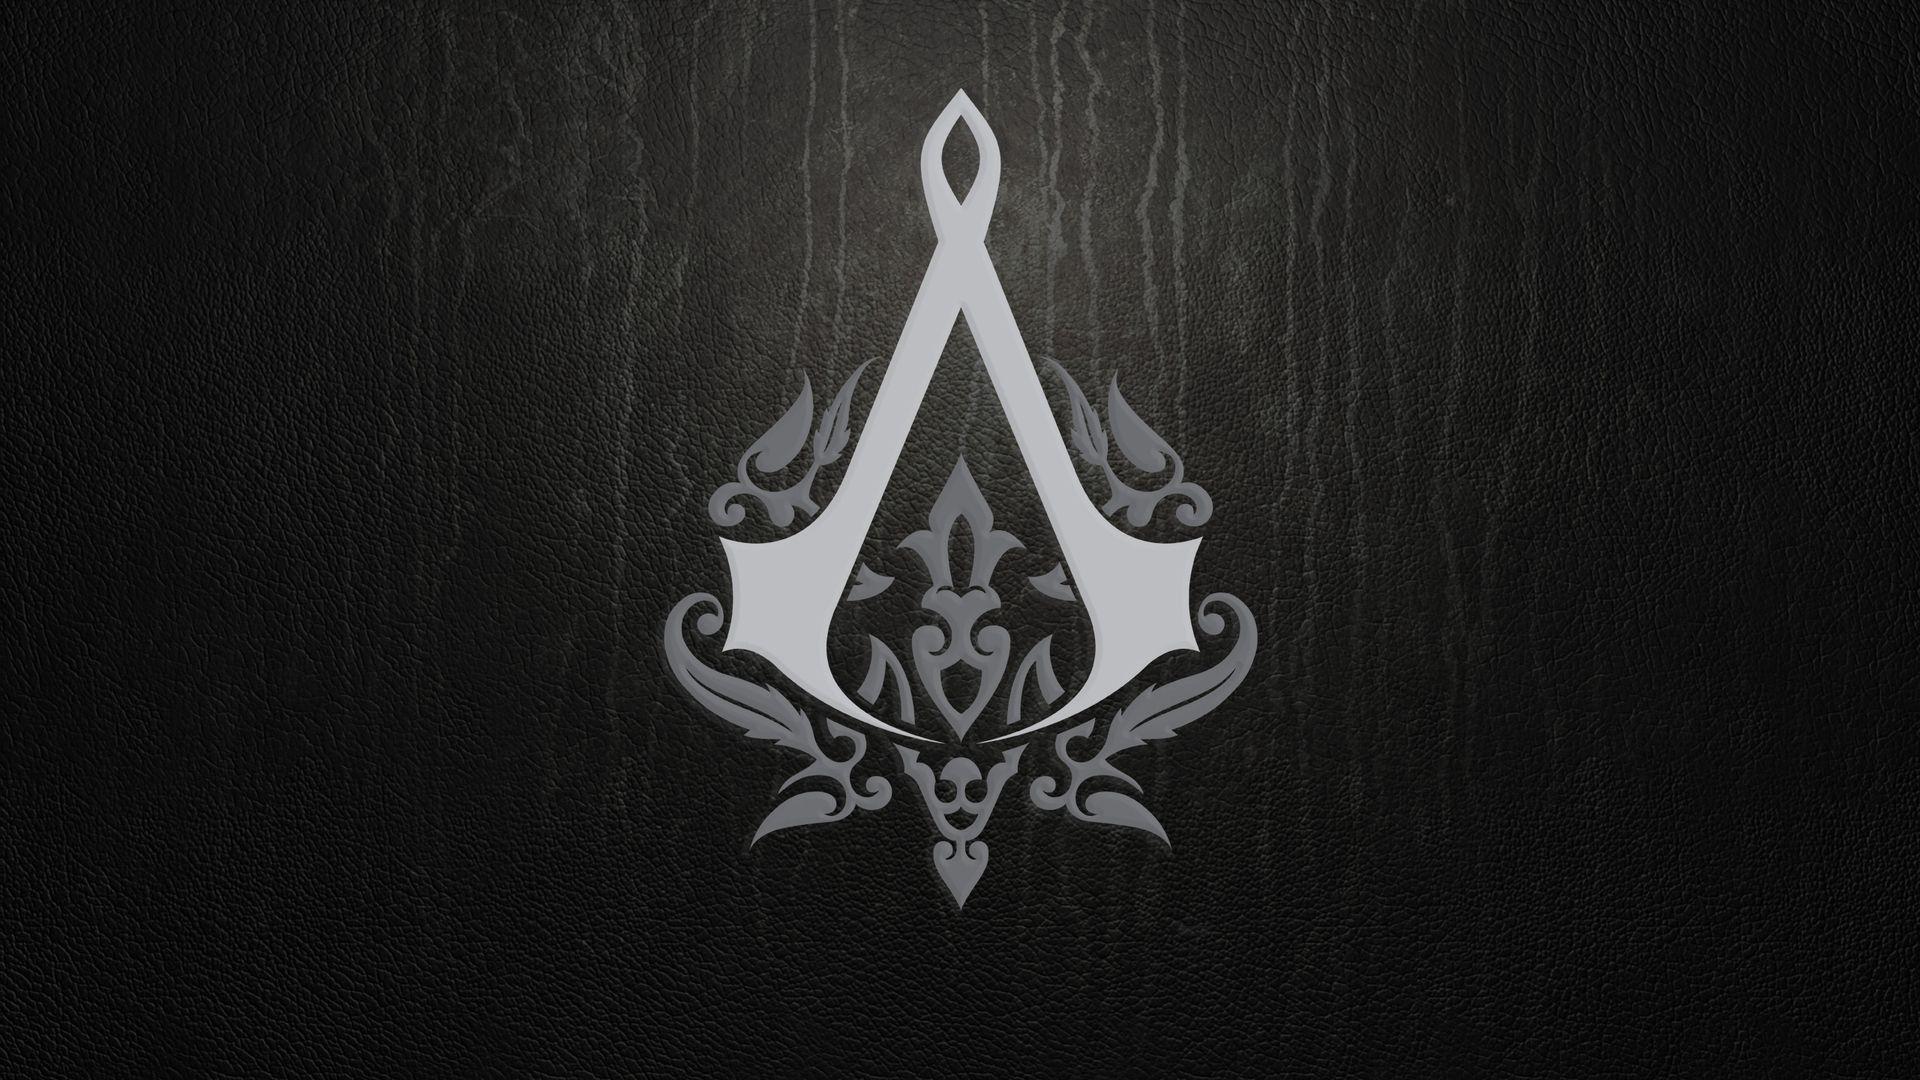 Assassins Creed HD desktop wallpapers Widescreen High